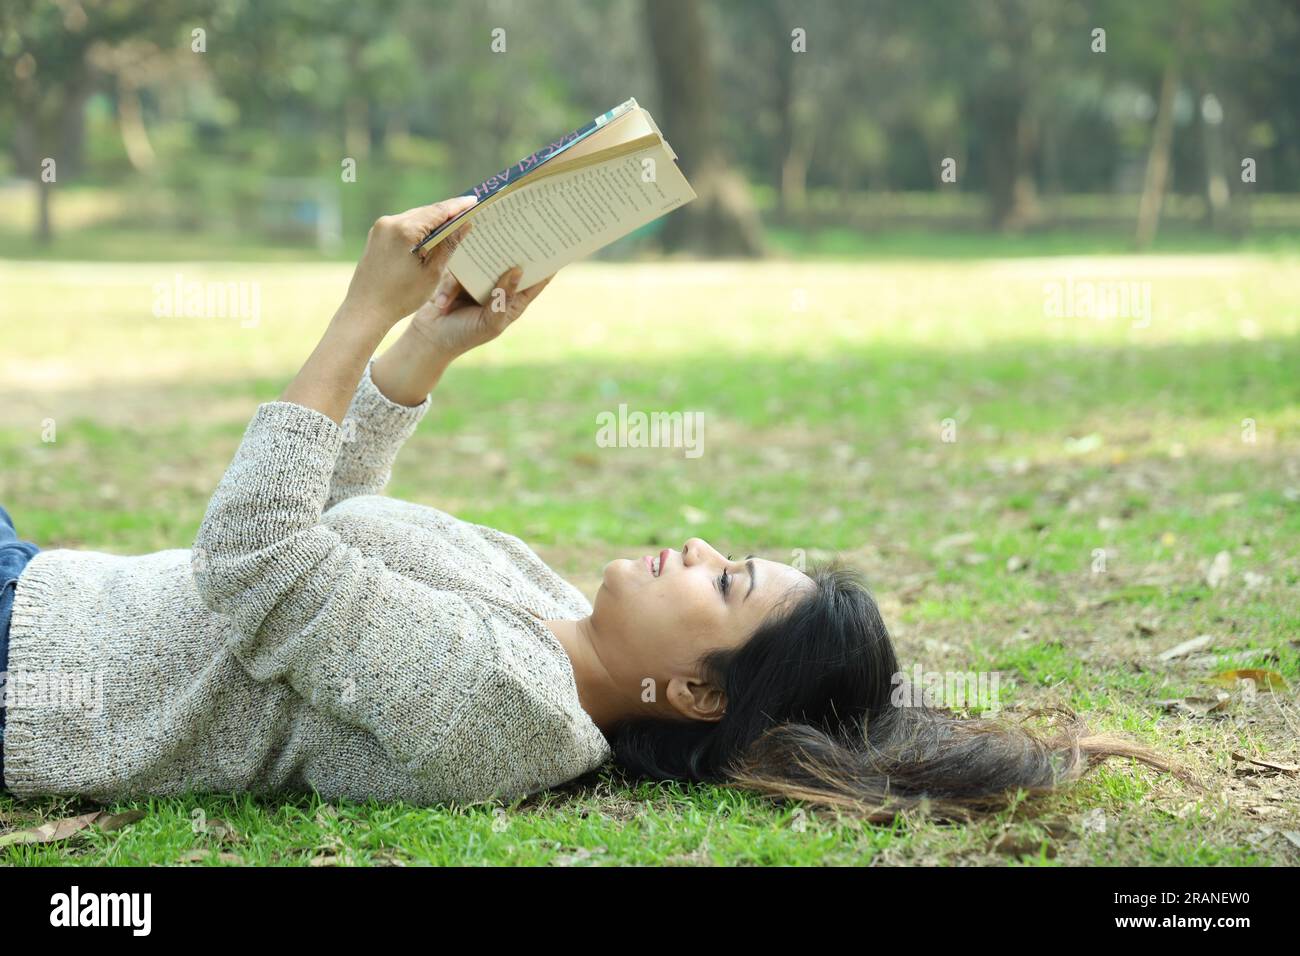 Ein hübsches College-Mädchen, das ein Buch liest, das im Gras liegt an einem Tag. Grüne, ruhige Umgebung Stockfoto